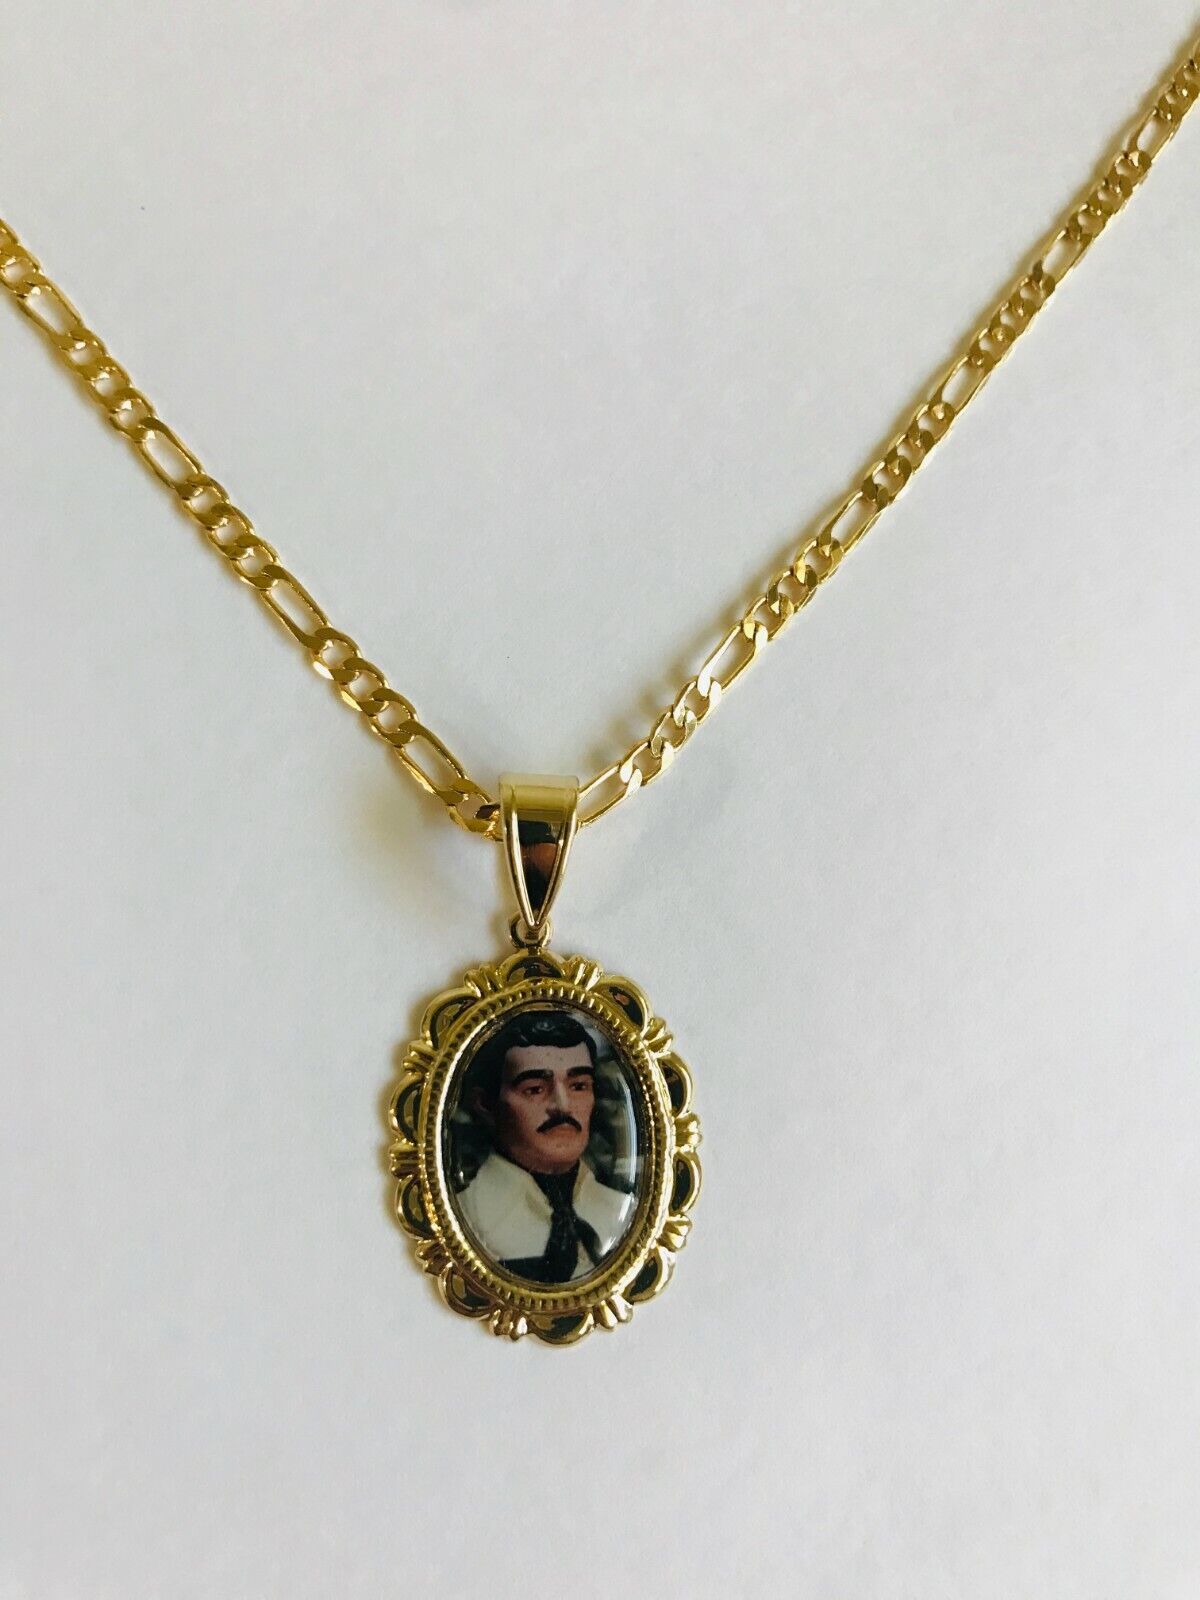 Jesus Malverde Medalla y Cadena Figaro Gold Filled